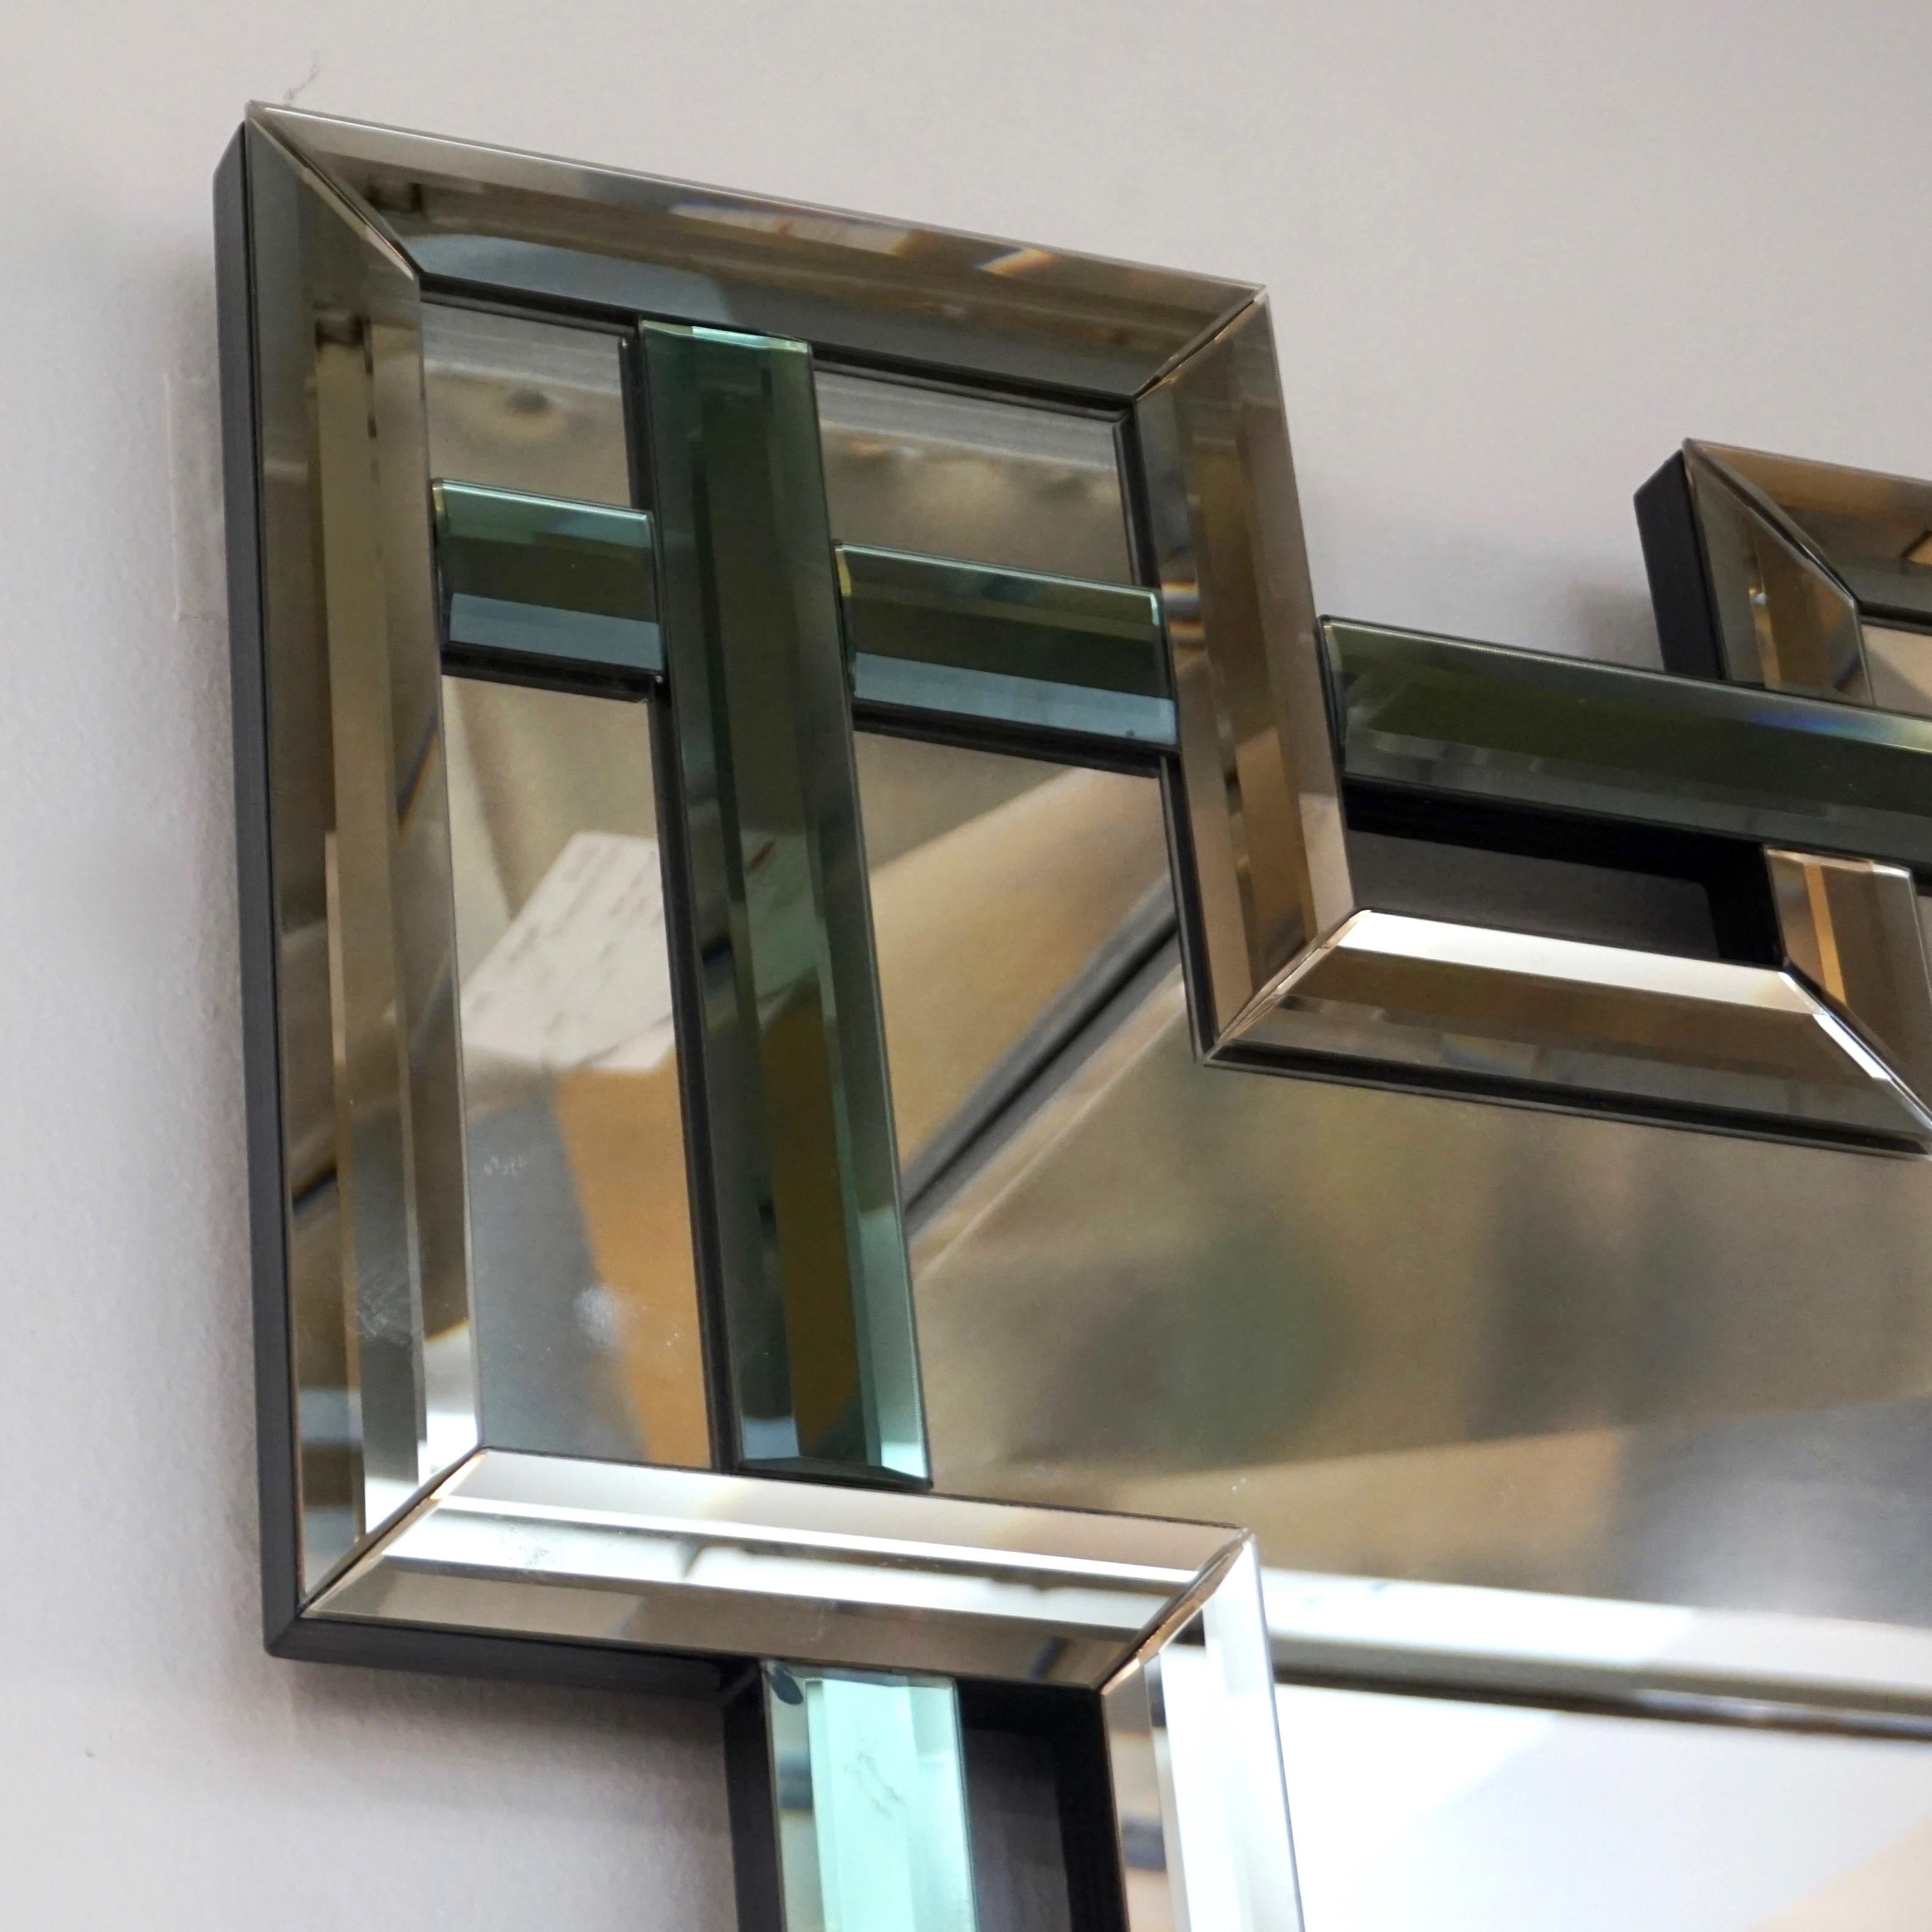 Art Glass Contemporary Italian Geometric Murano Glass Mirror with Aqua Green Ribbon Decor